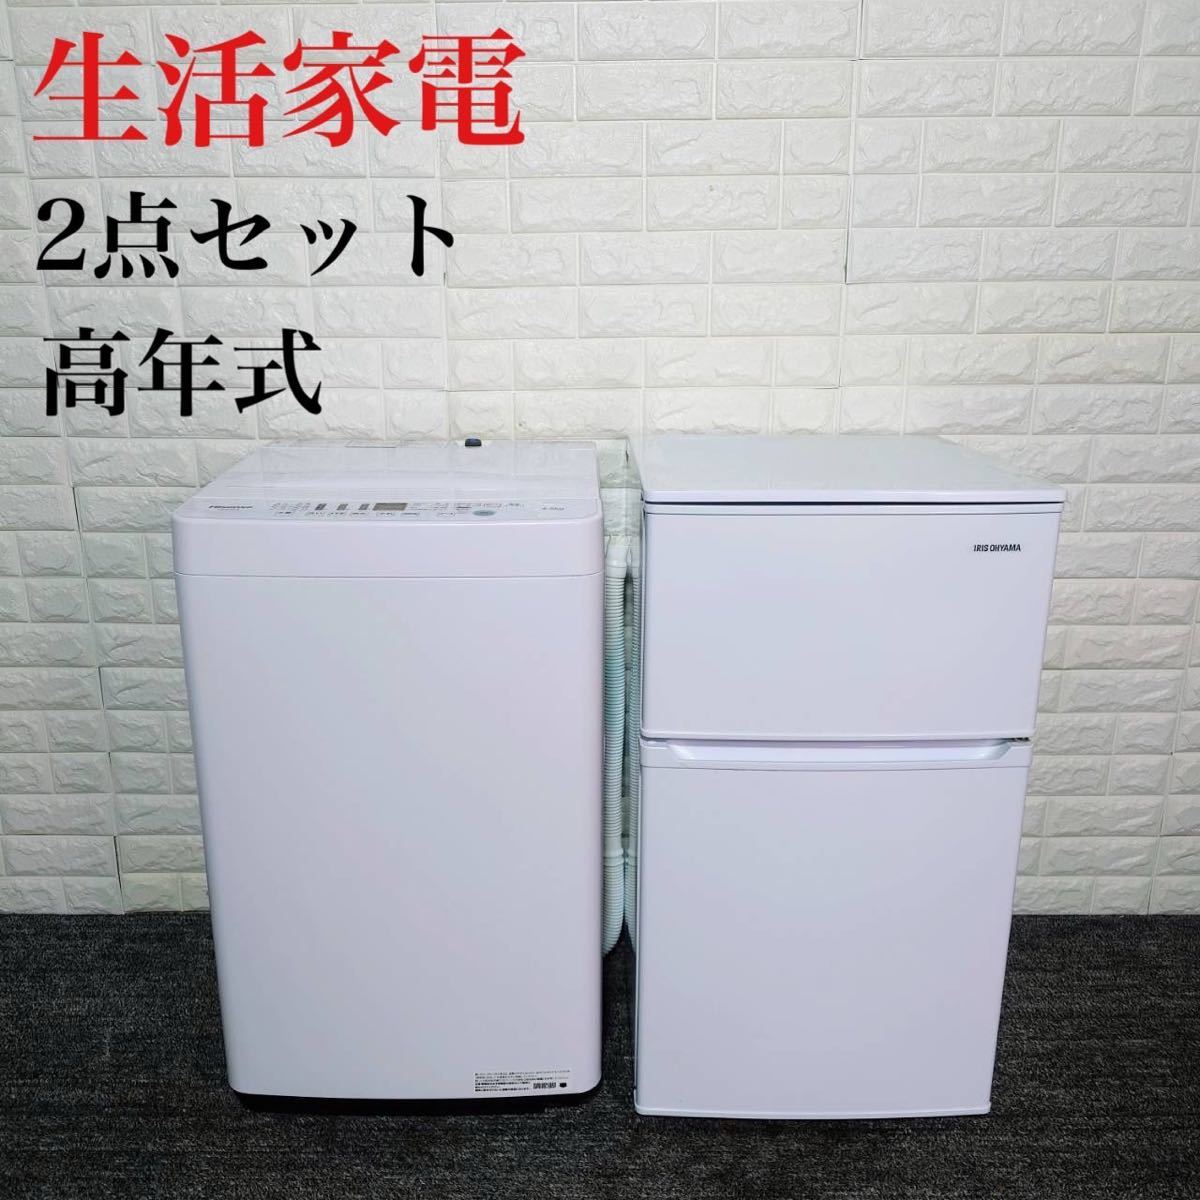 生活家電 2点セット 冷蔵庫 洗濯機 高年式 ひとり暮らし B110